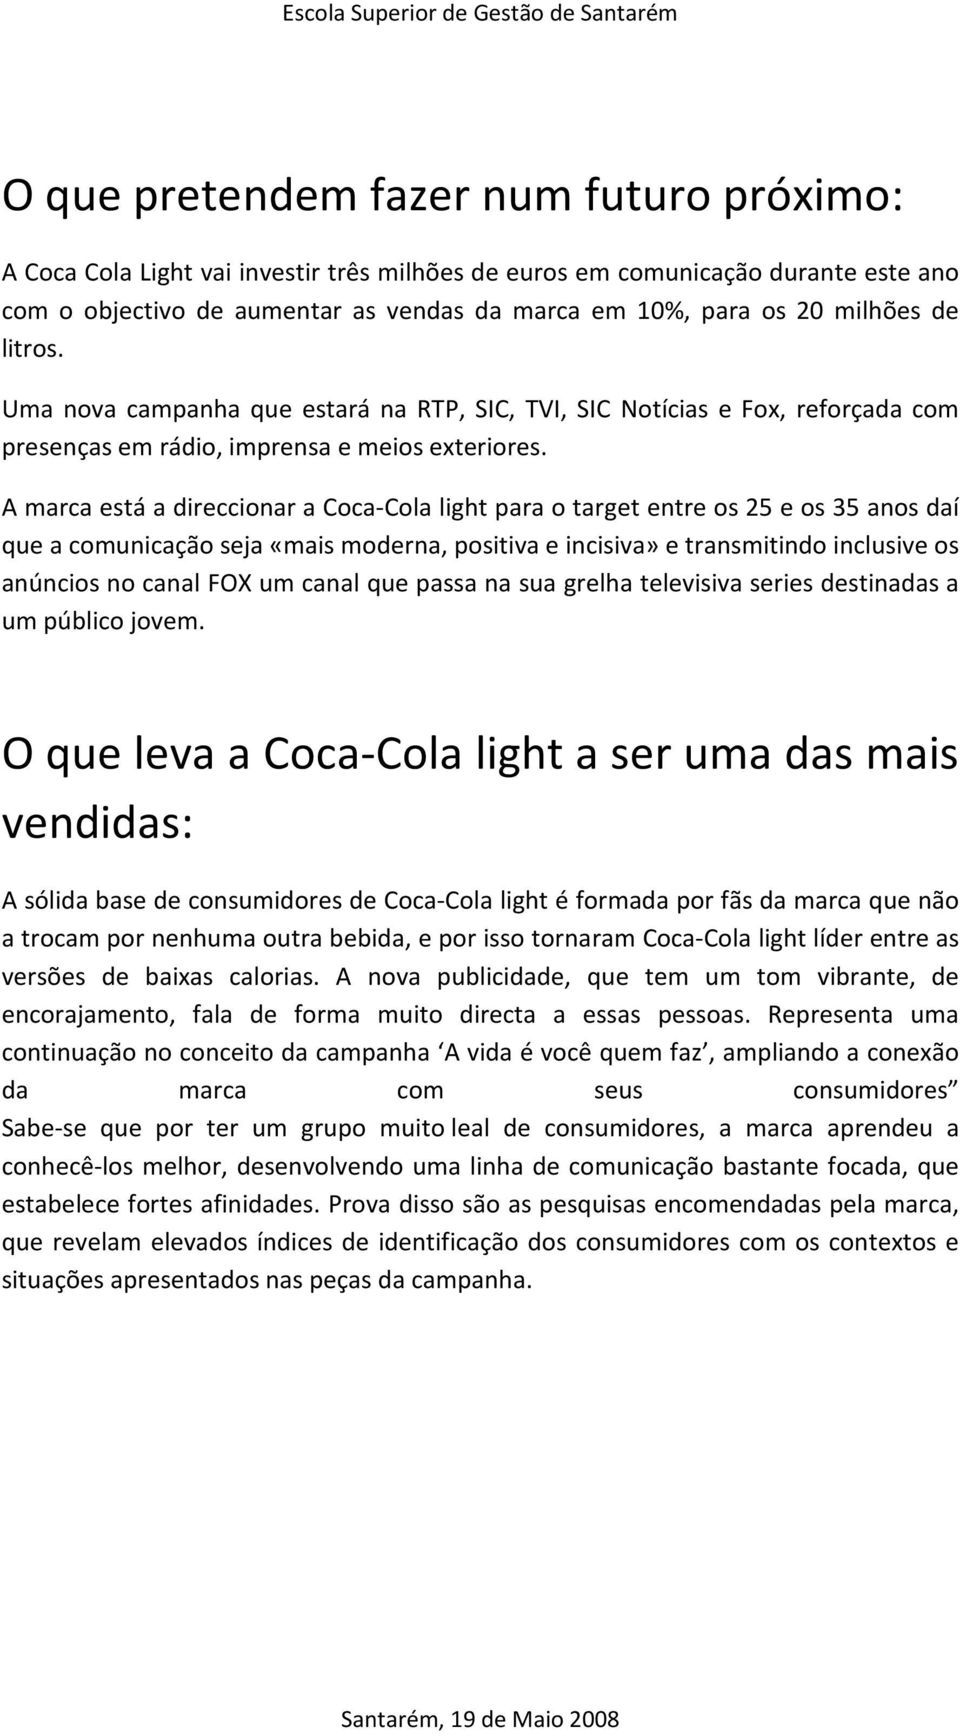 A marca está a direccionar a Coca-Cola light para o target entre os 25 e os 35 anos daí que a comunicação seja «mais moderna, positiva e incisiva» e transmitindo inclusive os anúncios no canal FOX um